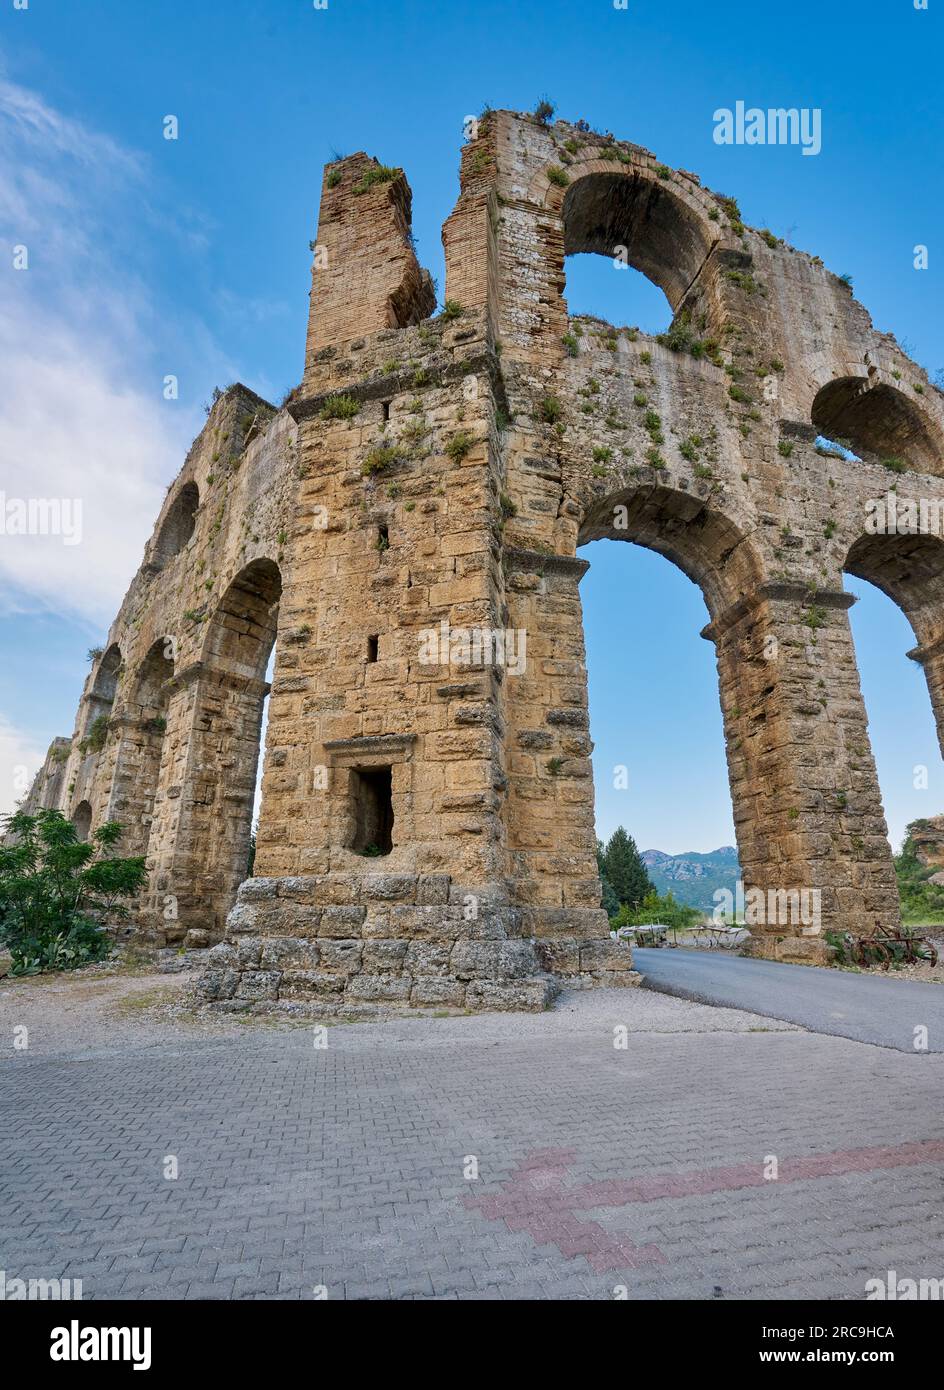 Roemisches Aquaedukt von Aspendos, Aspendos Ancient City, Antalya, Tuerkei    |Roman aqueduct of Aspendos, Aspendos Ancient City, Antalya, Turkey| Stock Photo